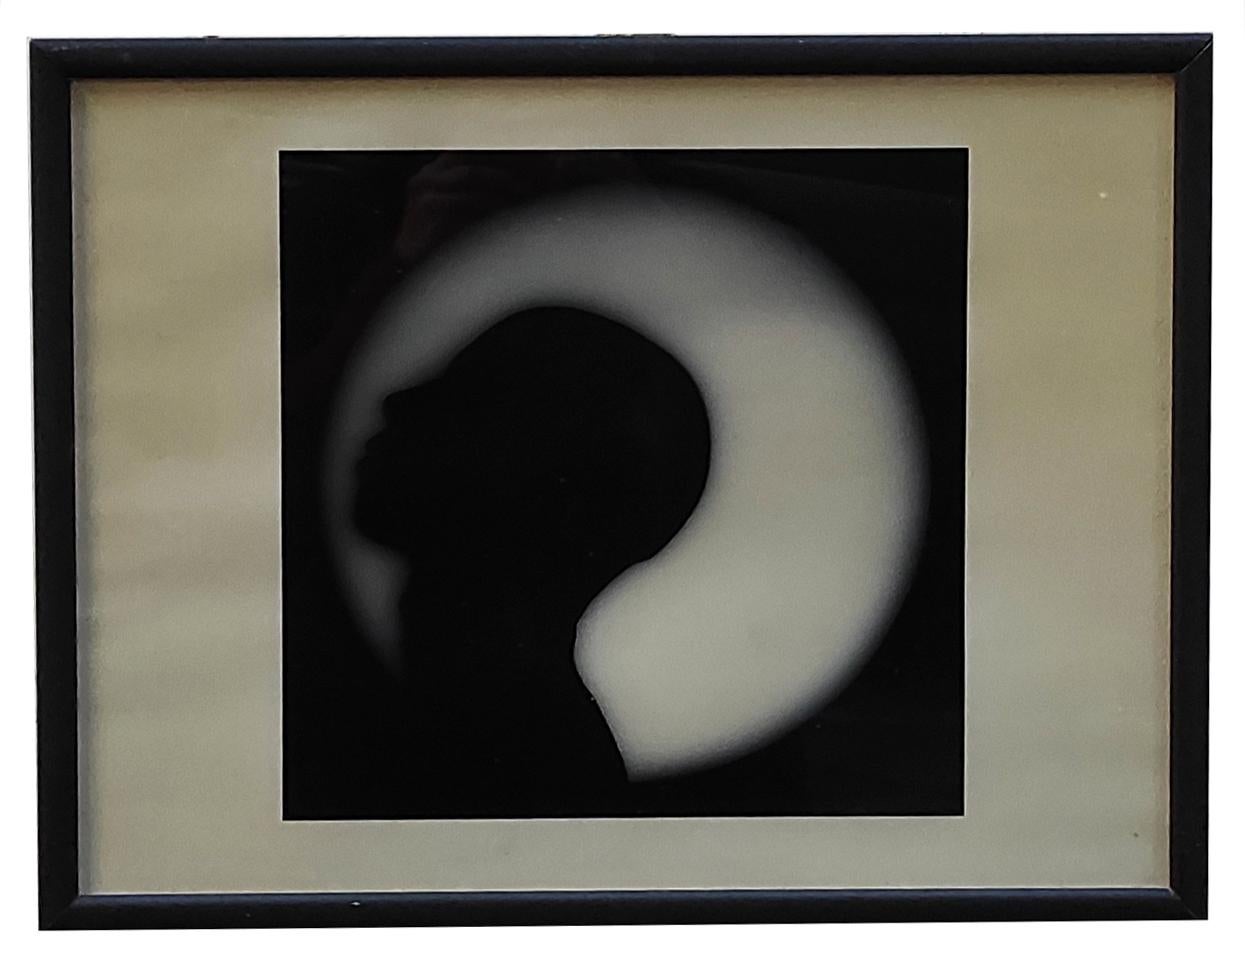 CHIARO DI LUNA – Fotografie Bianco e nero su carta fotografica